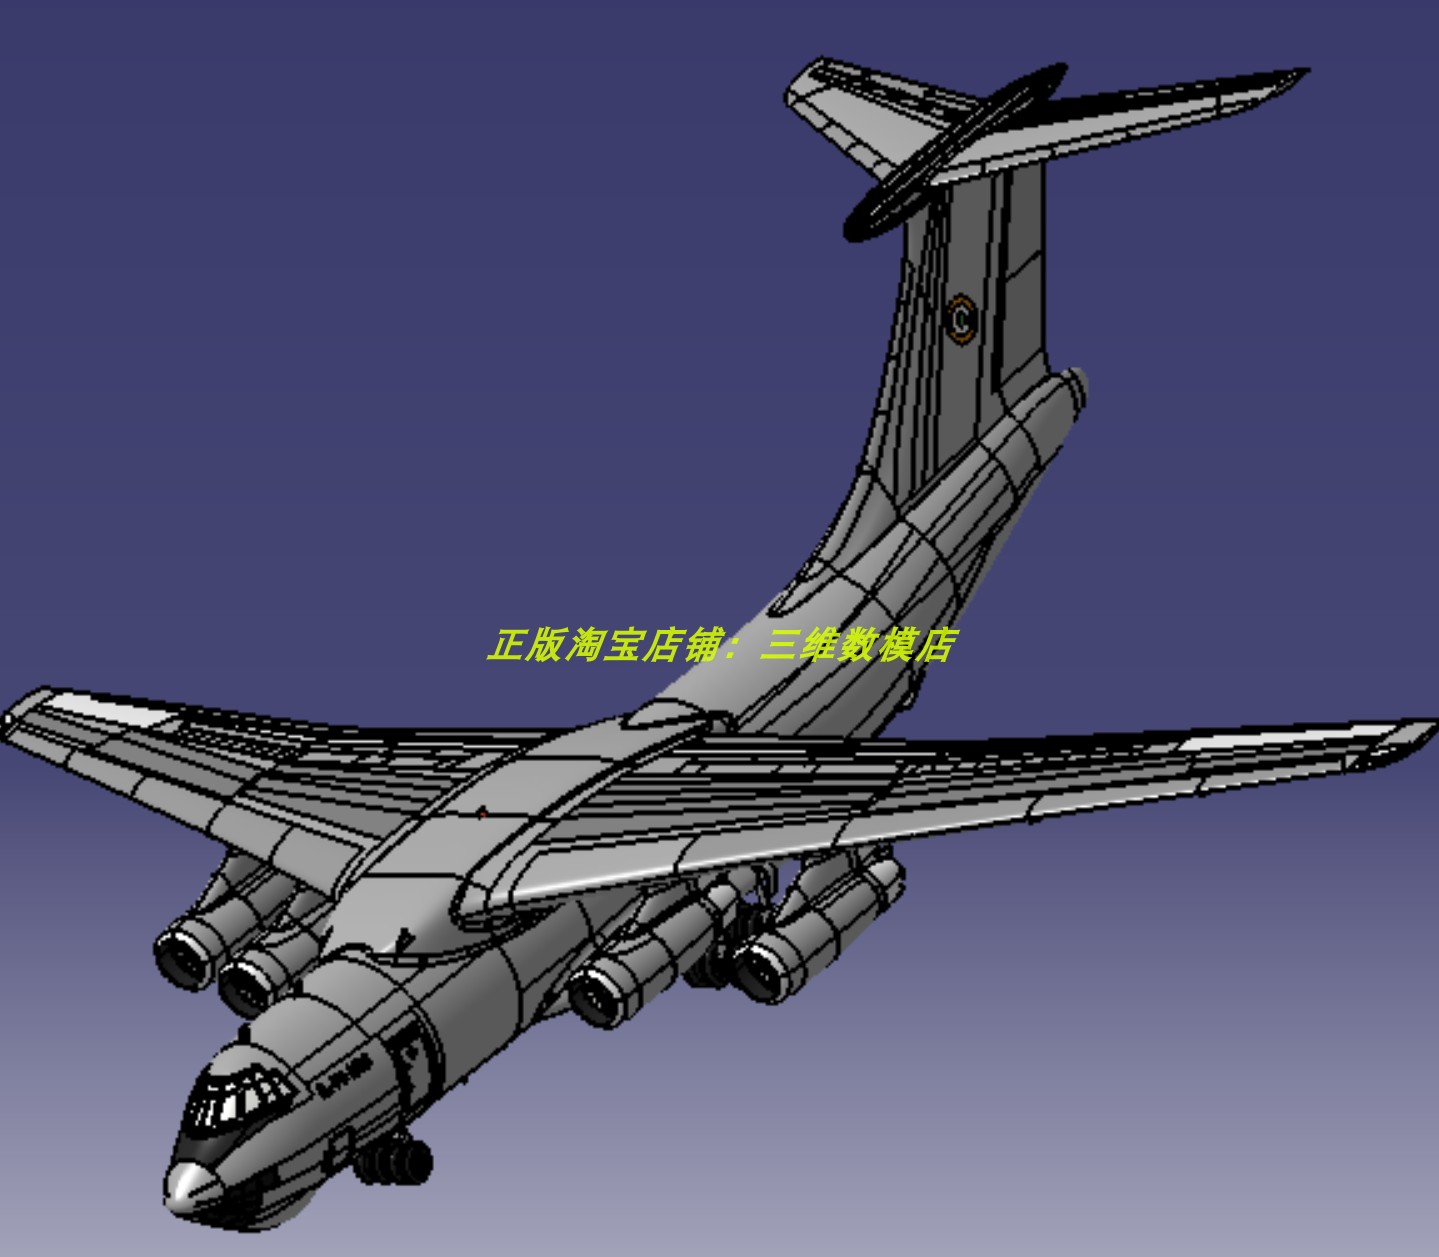 伊尔IL 78空中加油机运输机大型飞机身 三维几何数模型3D打印素材